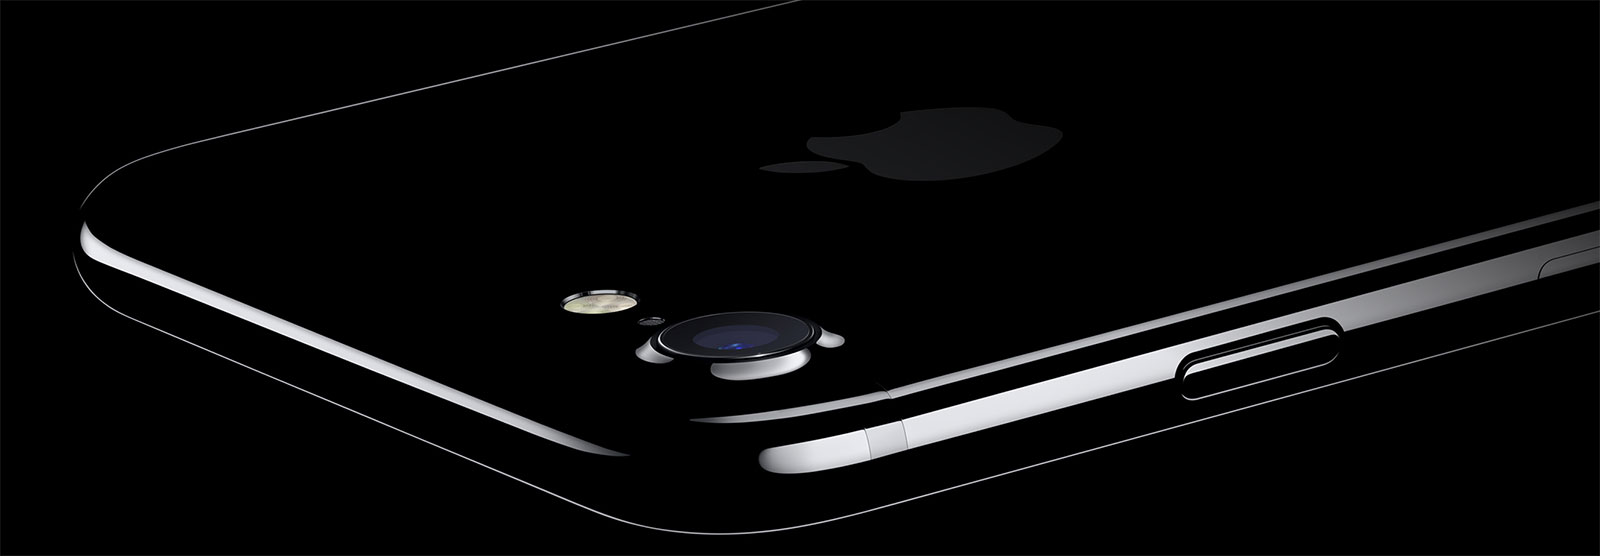 iPhone 7 negro brillante